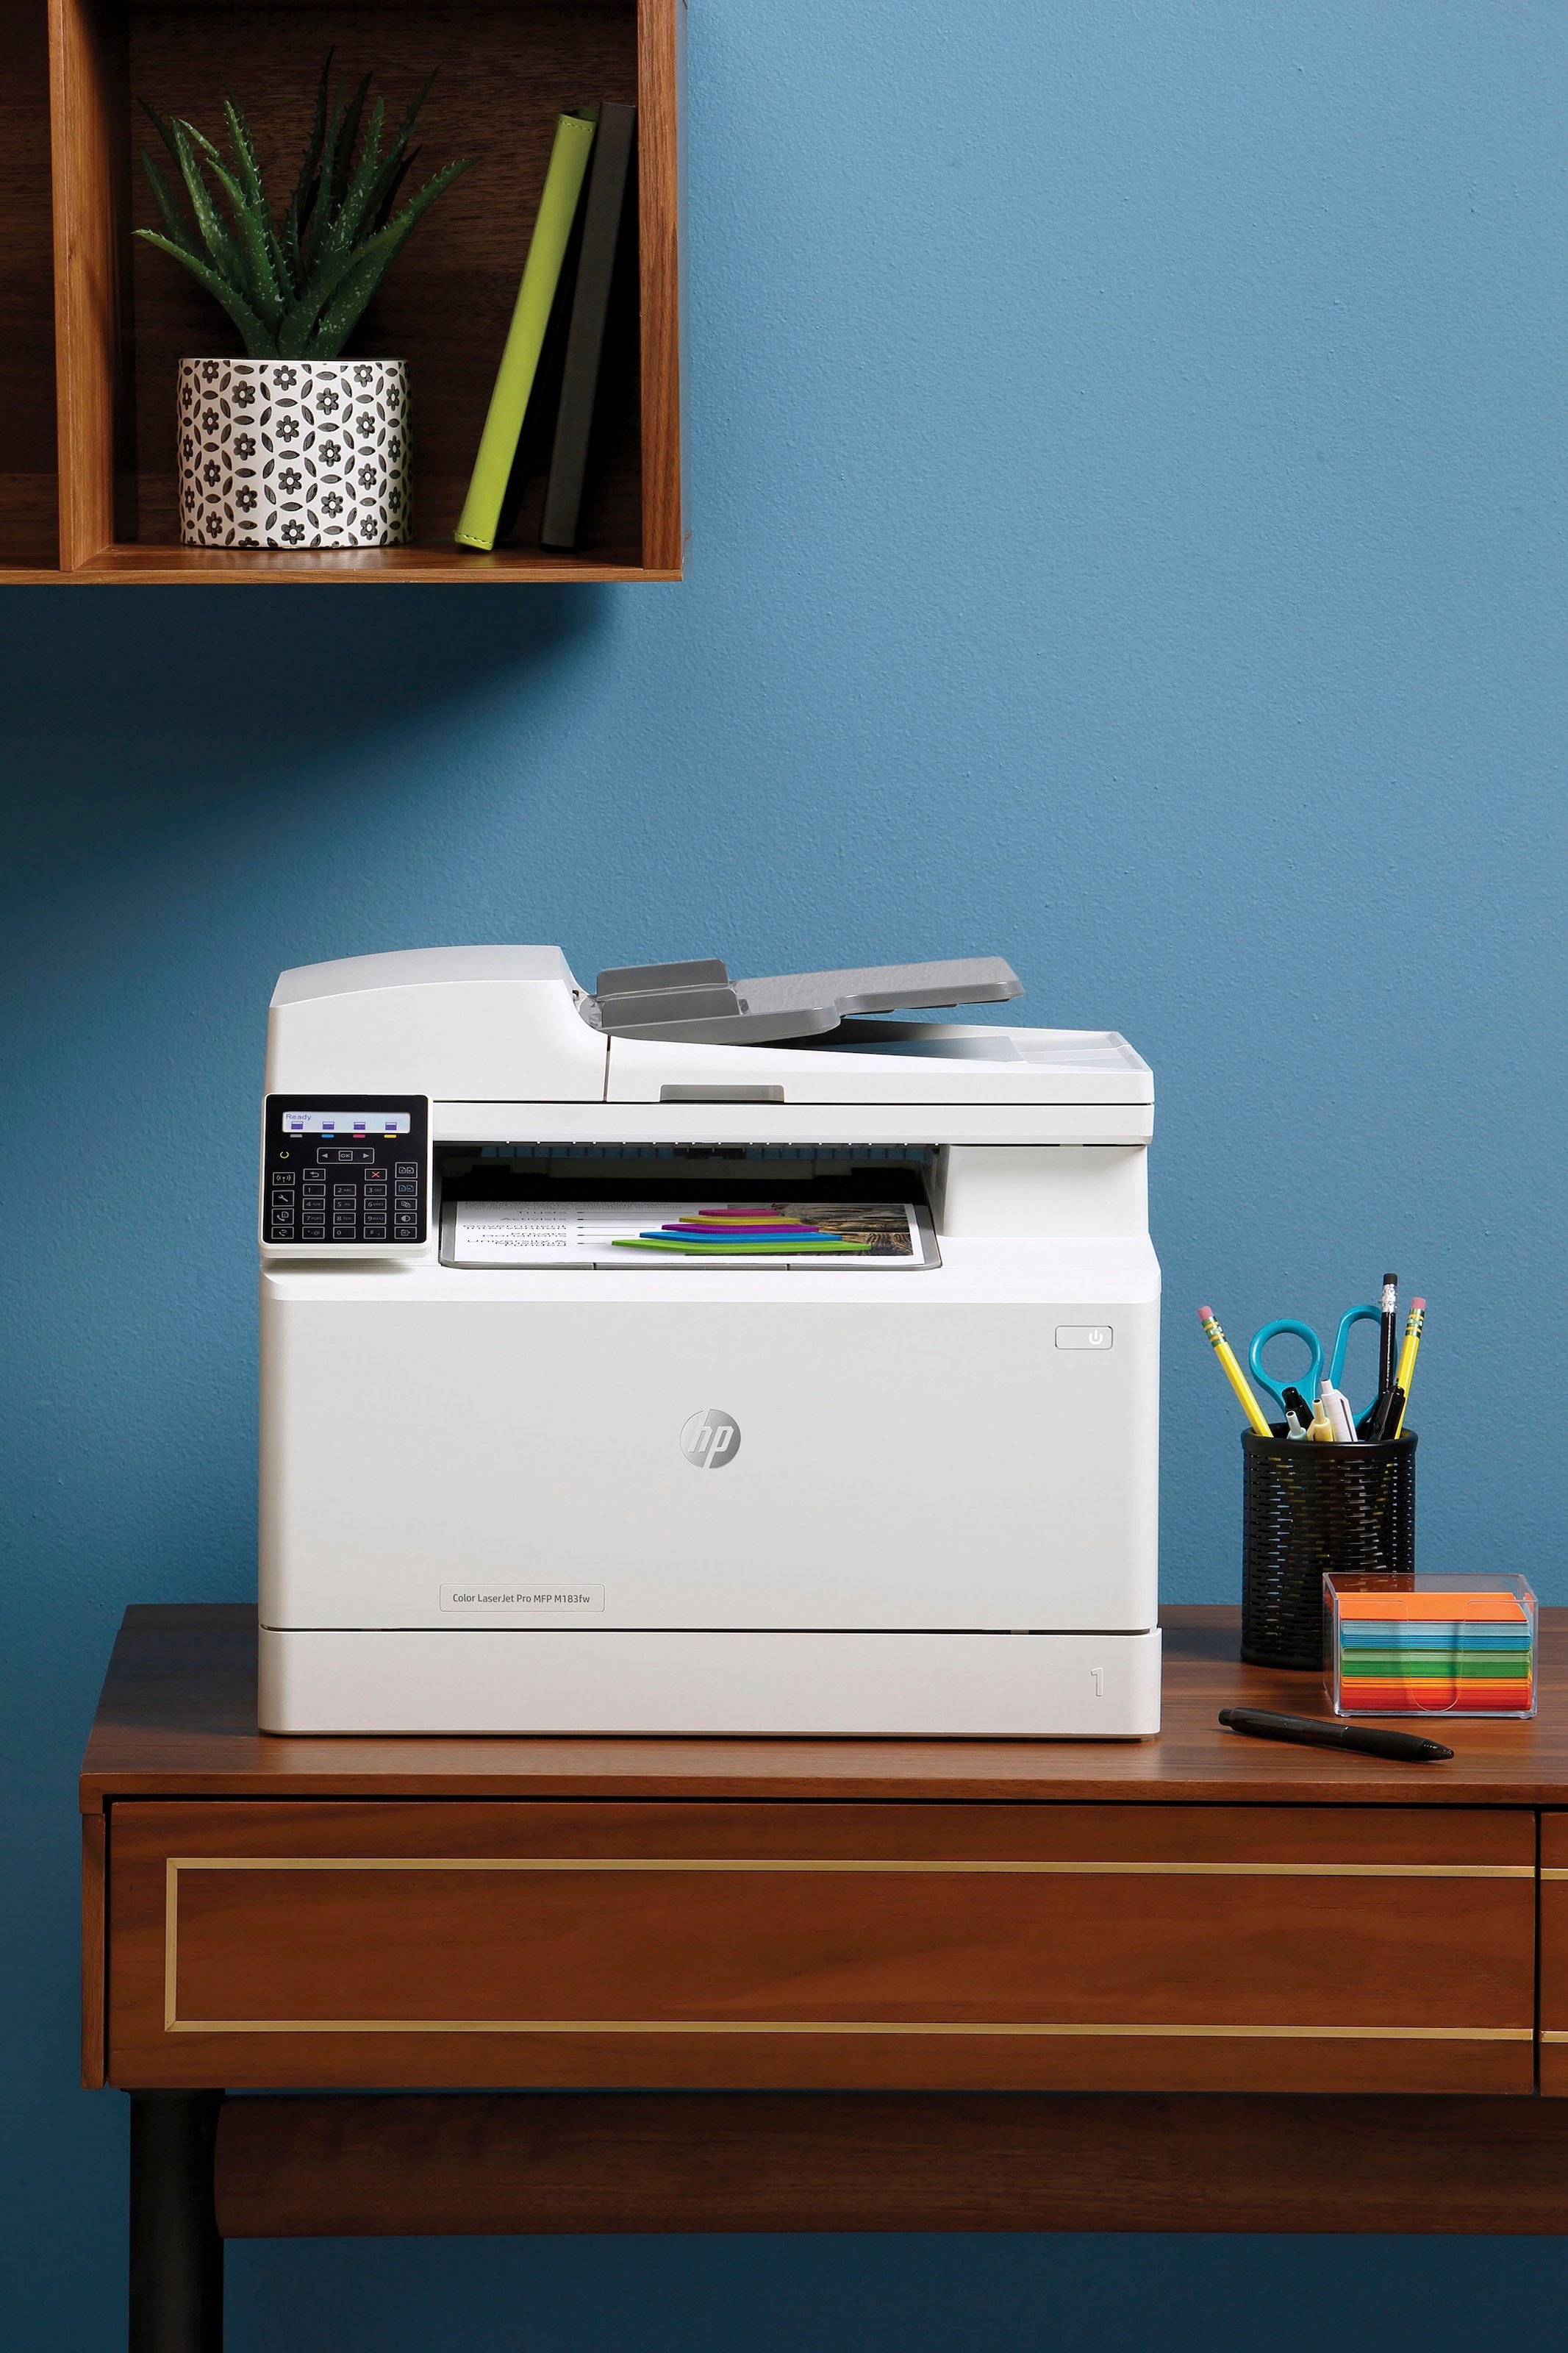 HP Multifunktionsdrucker »Color LaserJet Pro MFP M183fw«